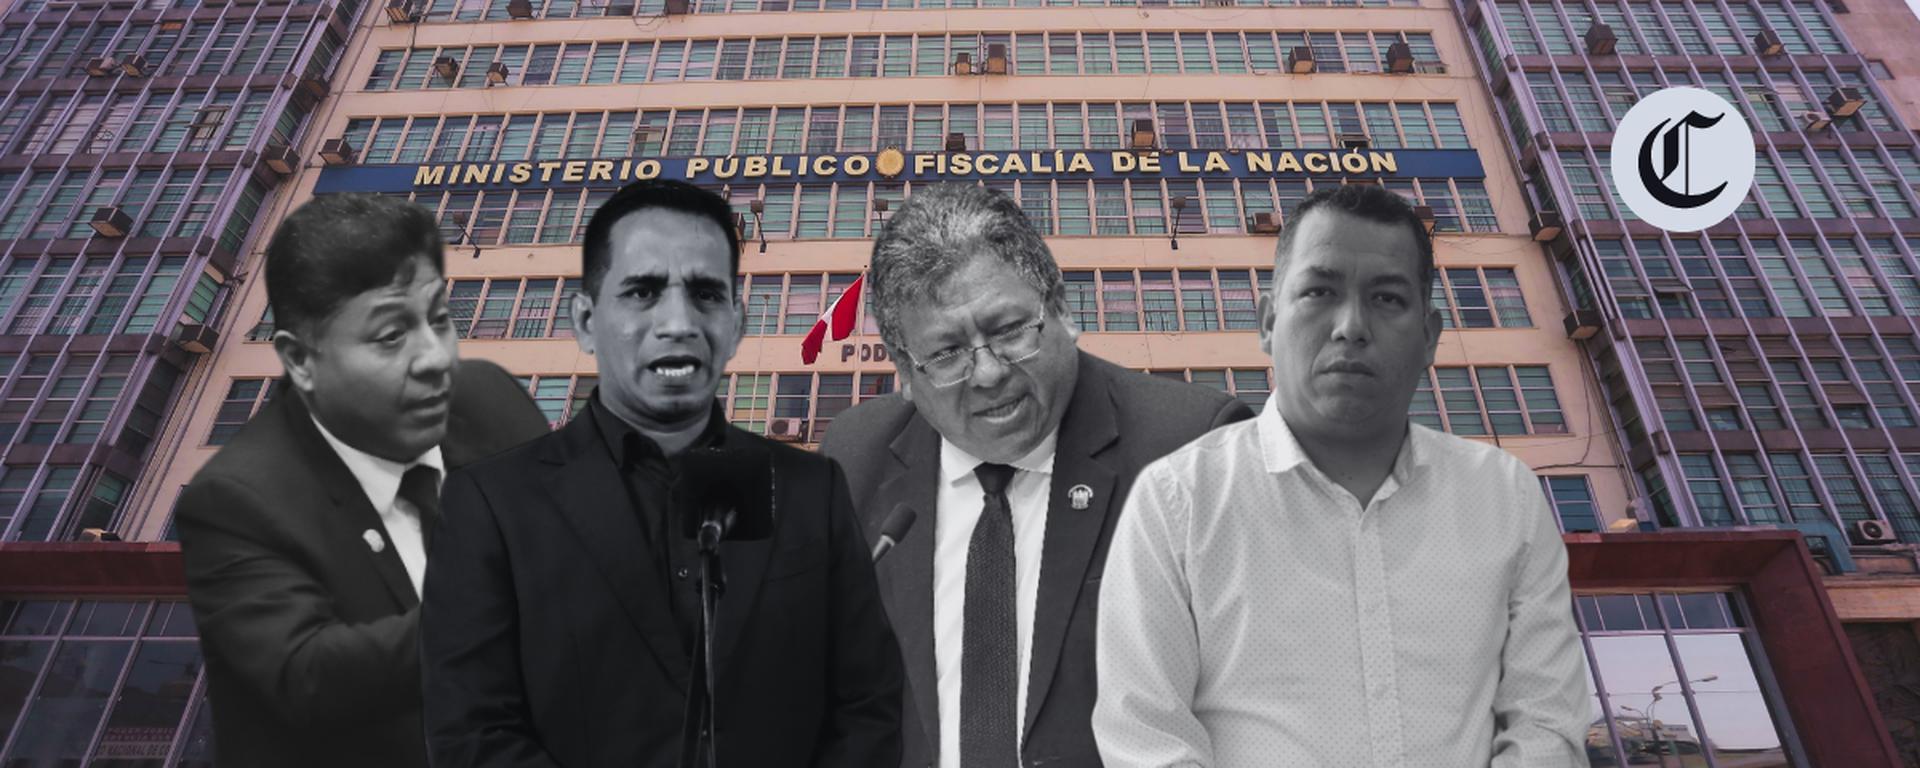 ‘Los Niños’ y Pedro Castillo: Las claves de la denuncia fiscal contra 4 congresistas de Acción Popular